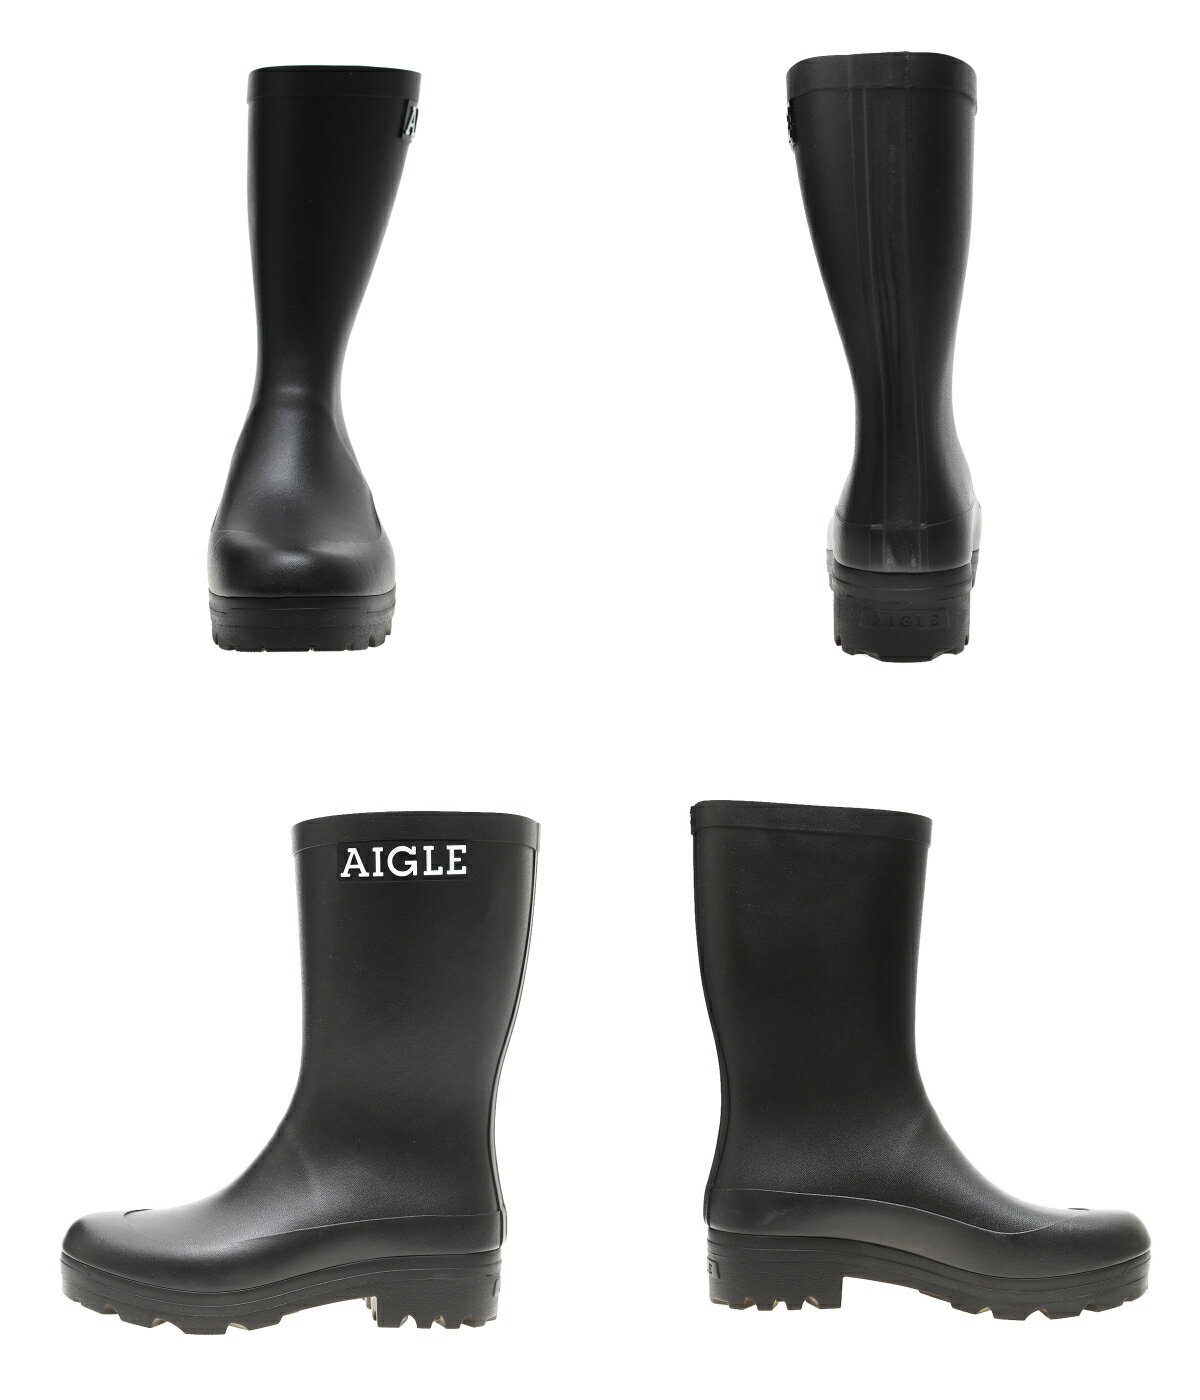 【送料無料】AIGLE / エーグル : ATELIER AIGLE M : アトリエ エーグル ラバーブーツ 長靴 防水性 耐久性 天然ゴム素材 ナイロン 靴 メンズ : ZZHS067【STD】